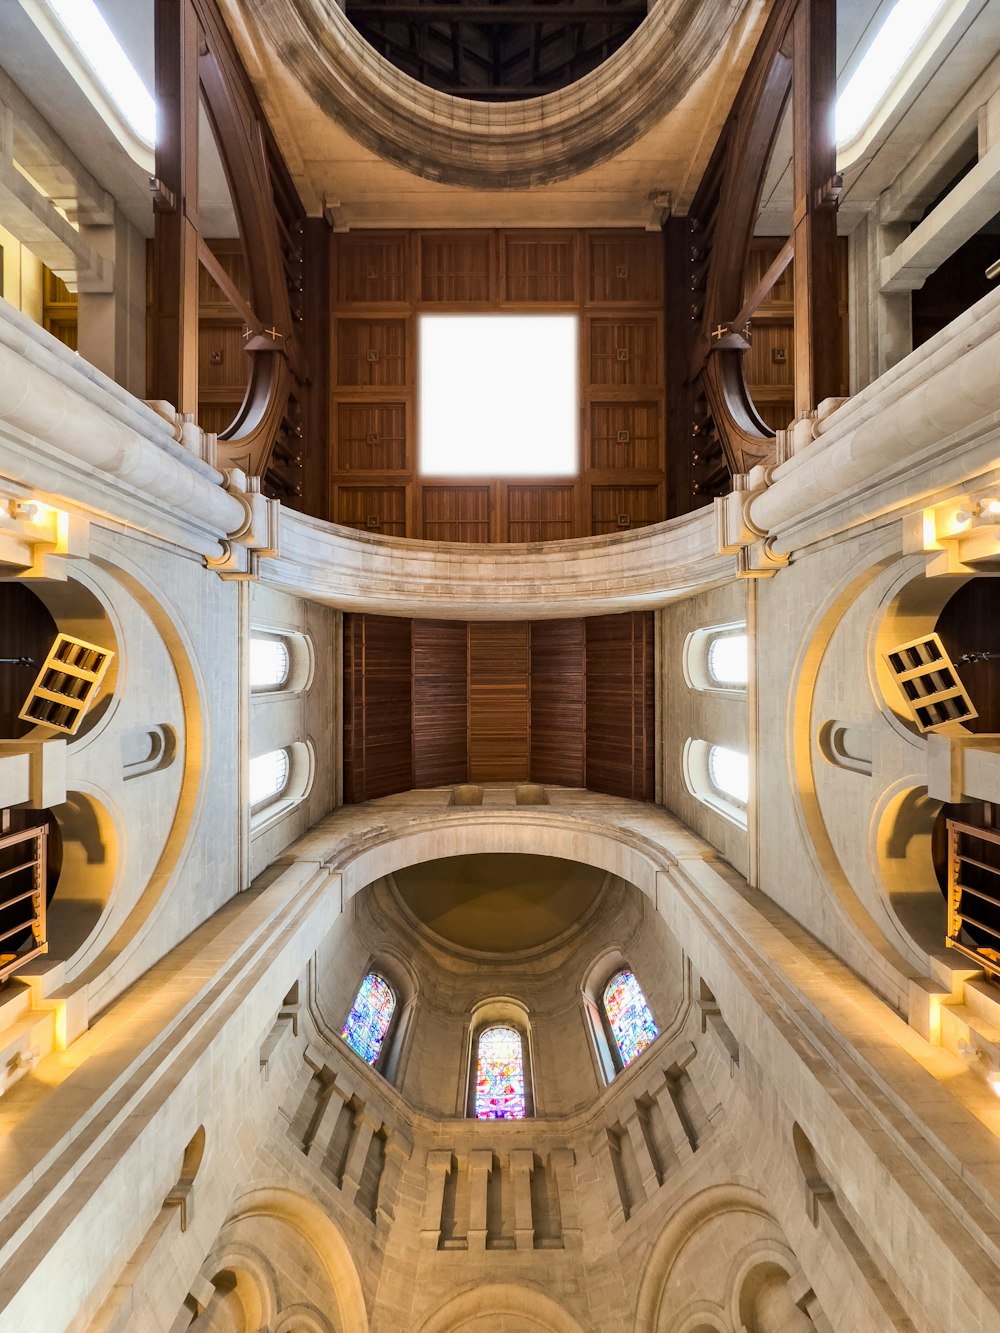 Una vista del interior de una iglesia mirando hacia el techo